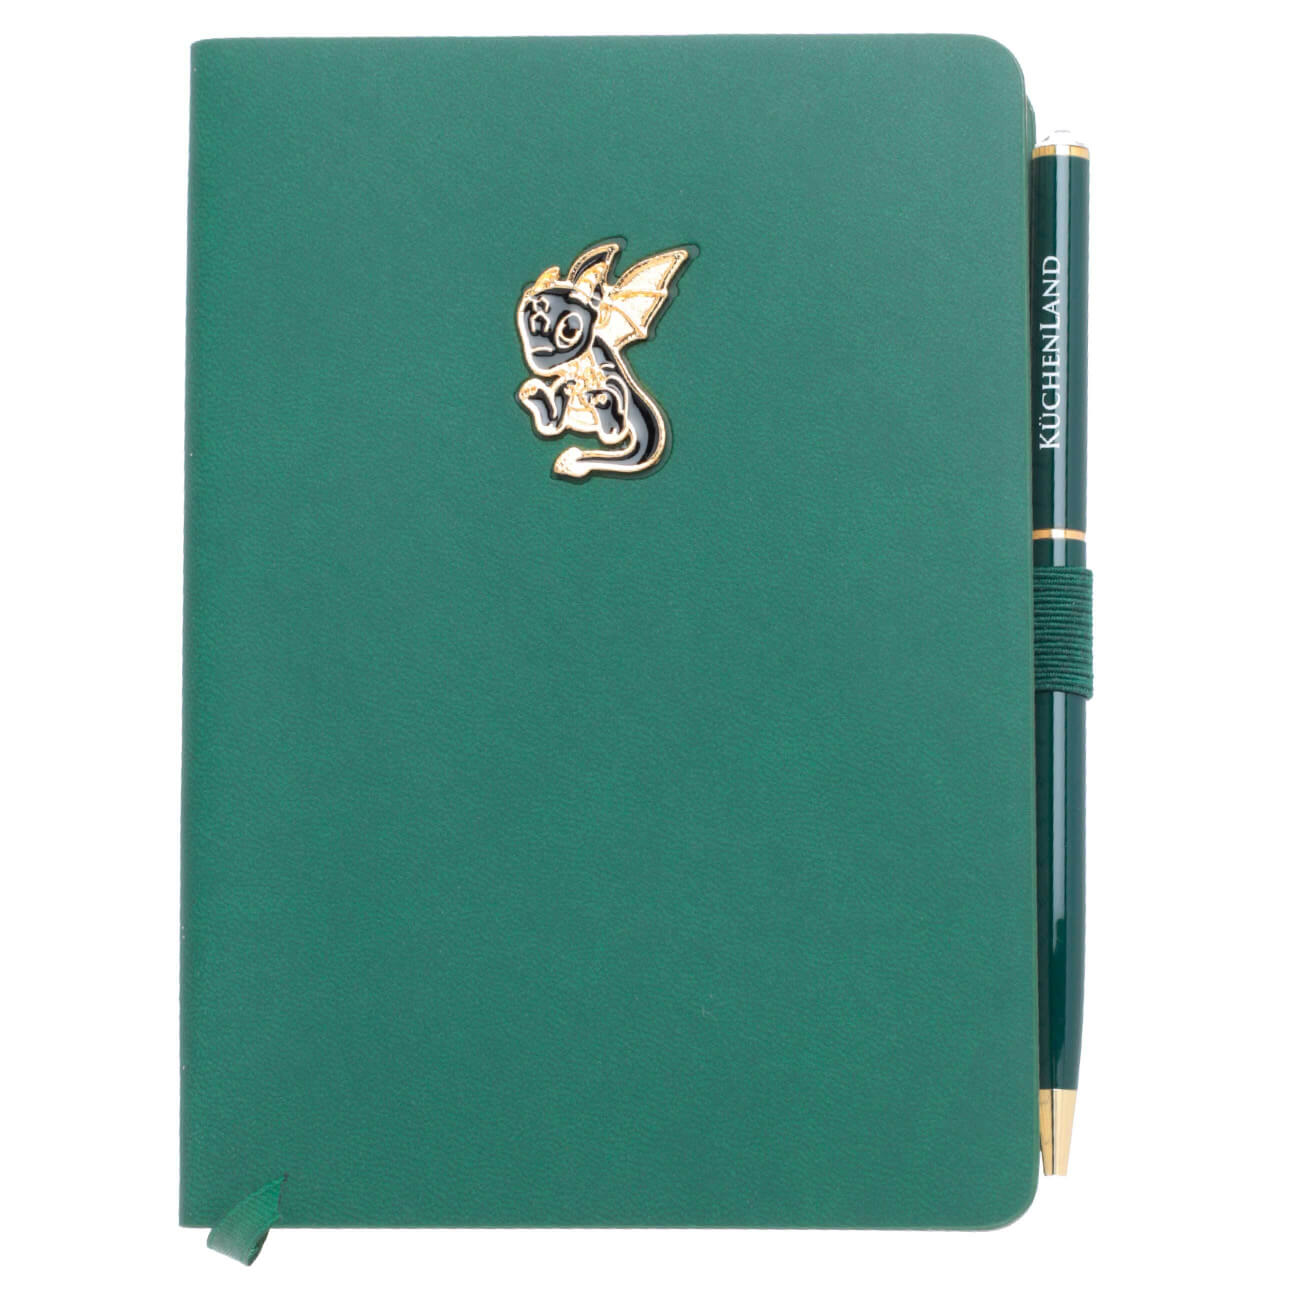 Блокнот для записей, 15х11 см, с ручкой, полиуретан, зеленый, Дракон с крыльями, Dragon spyro